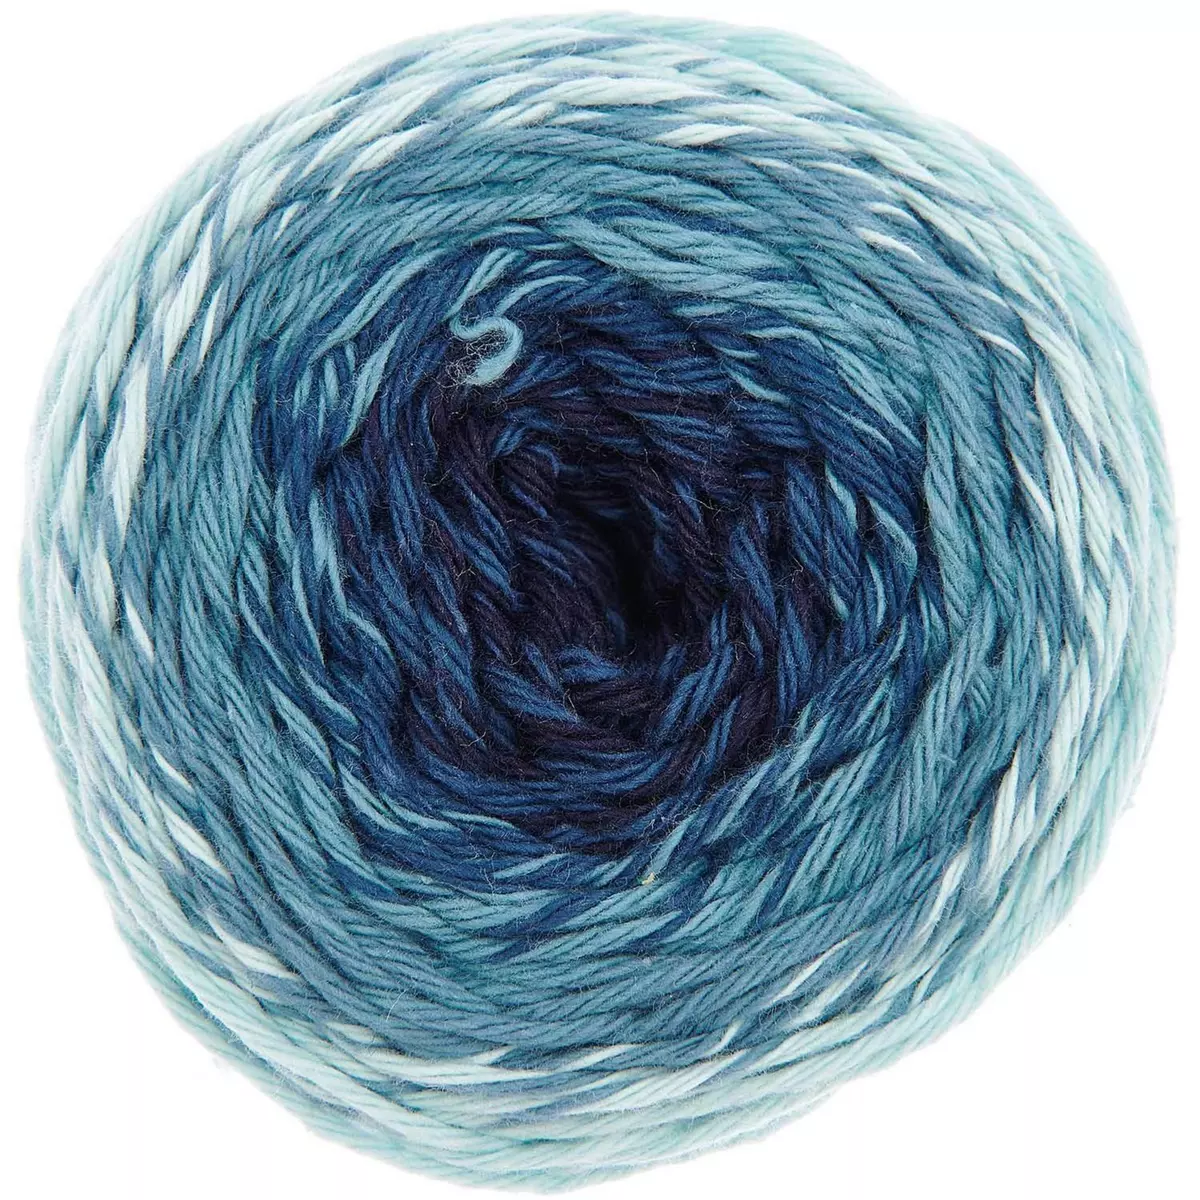 RICO DESIGN Pelote fil coton bleu - ricorumi spin spin 50 g